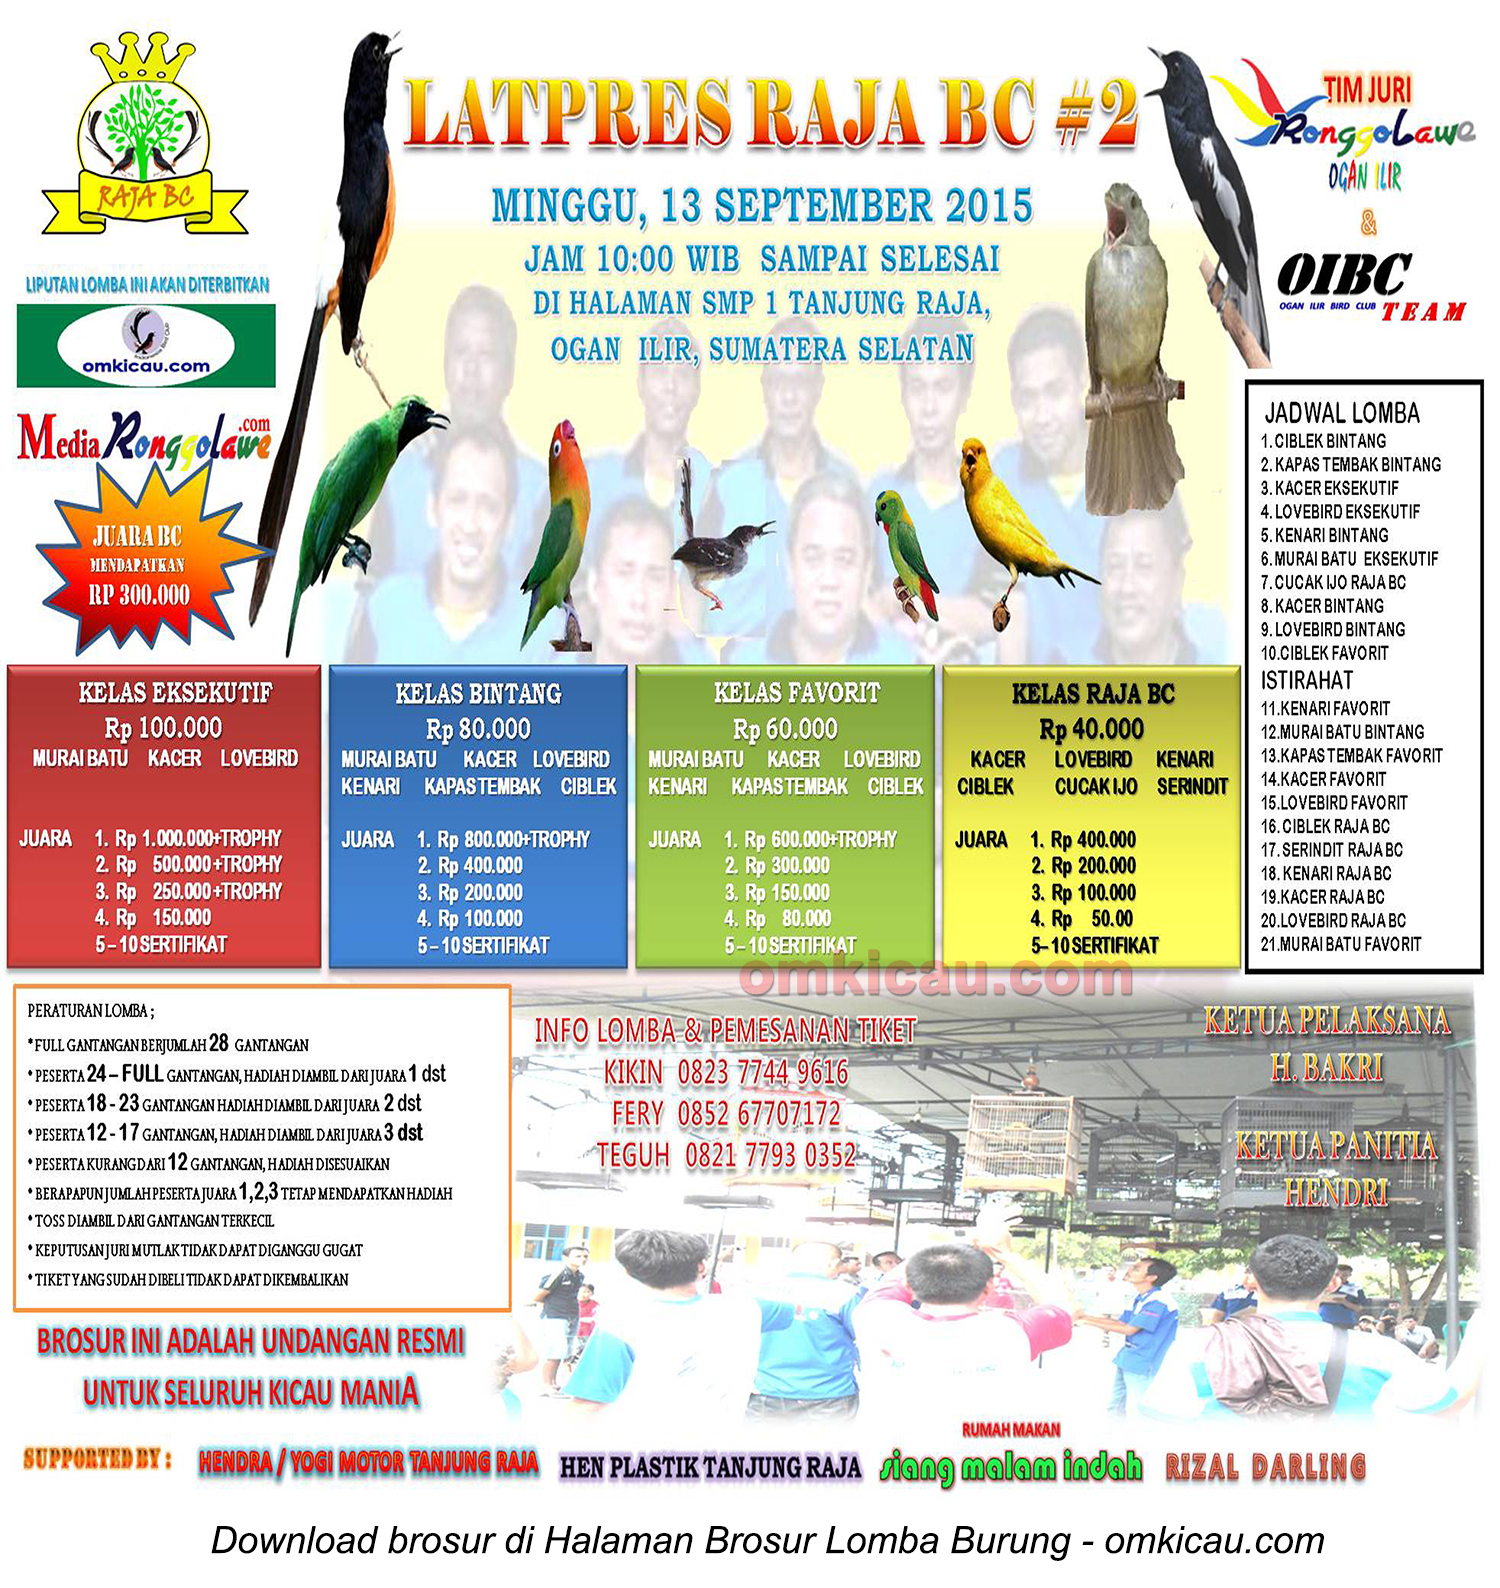 Brosur Latpres Burung Berkicau Raja BC #2, Ogan Ilir, 13 September 2015